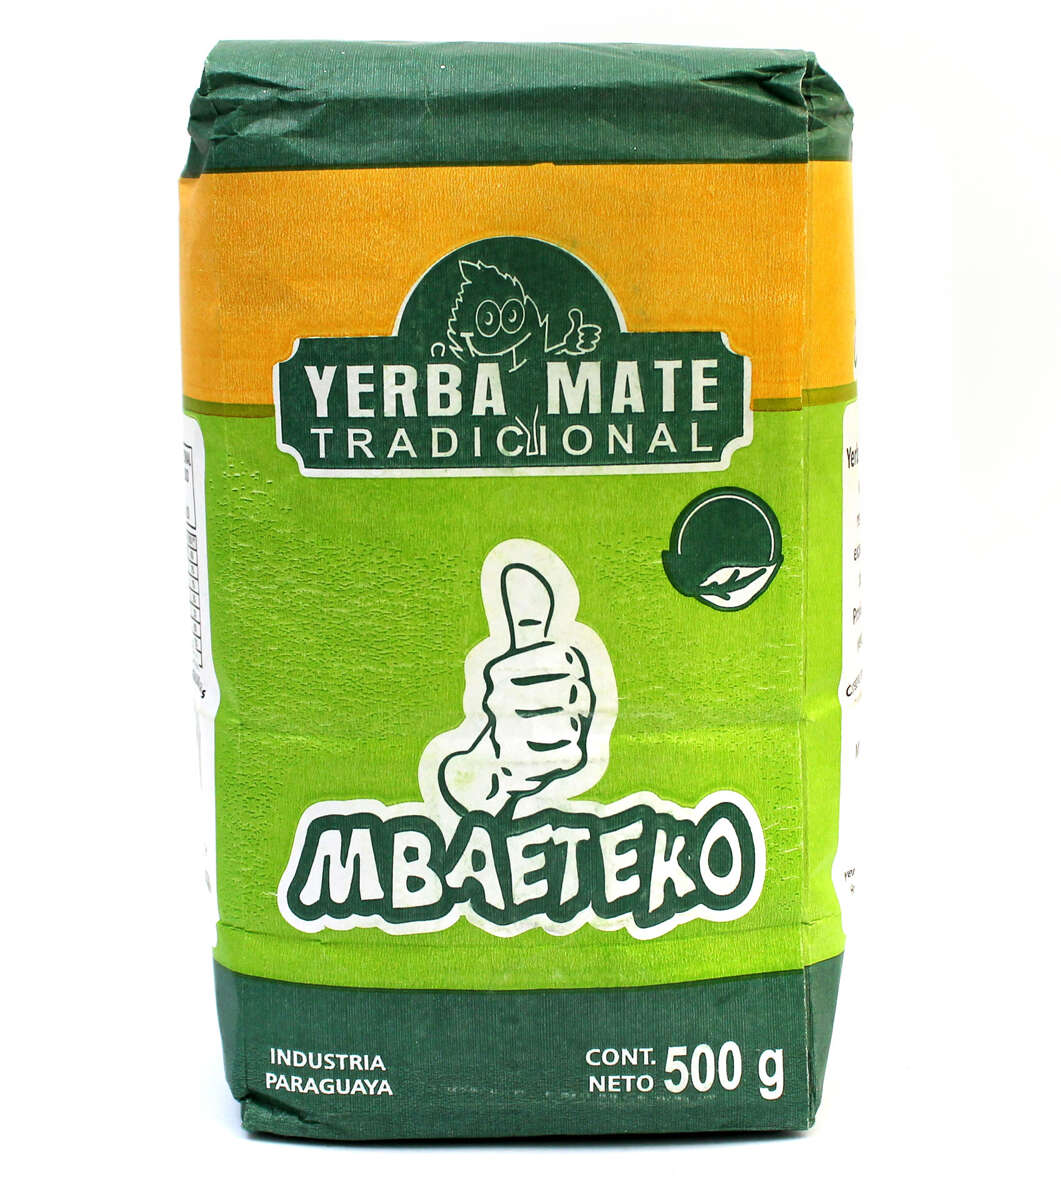 Mbaeteko Traditional yerba mate tea